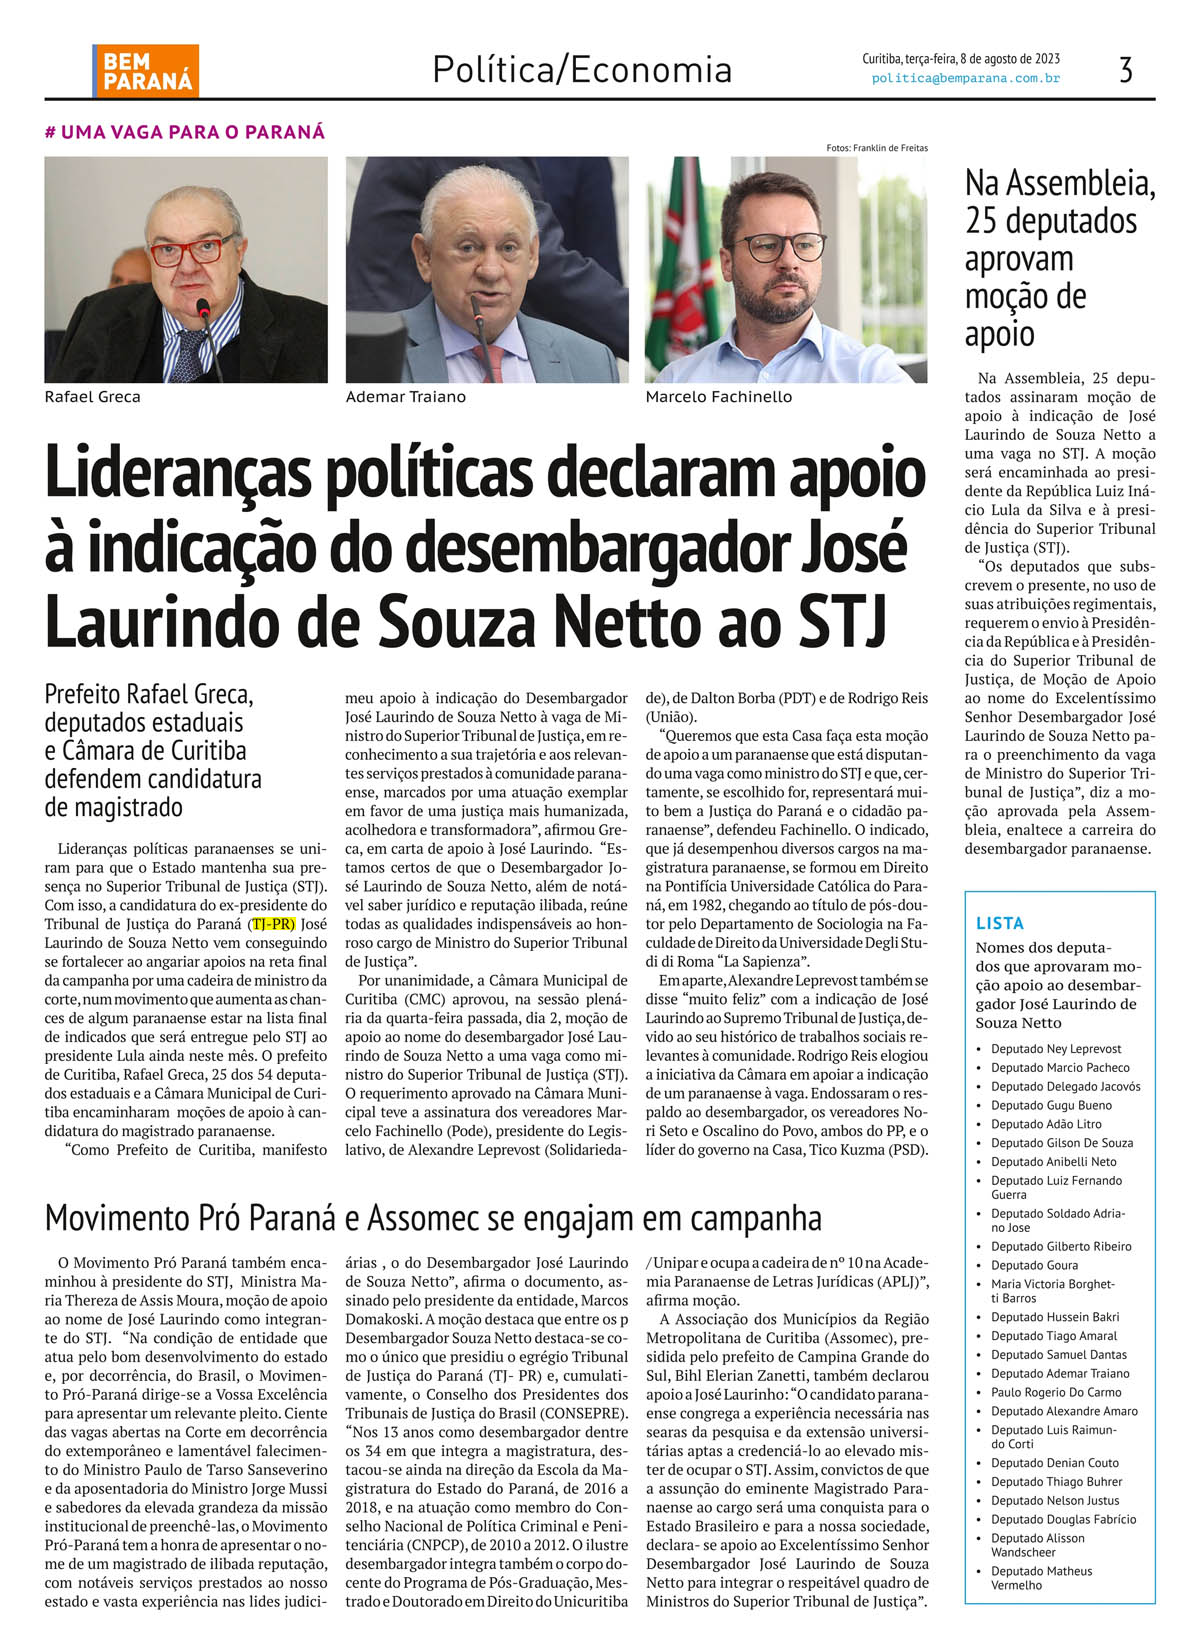 Lideranças políticas declaram apoio à indicação do desembargador José Laurindo de Souza Netto ao STJ - image 1